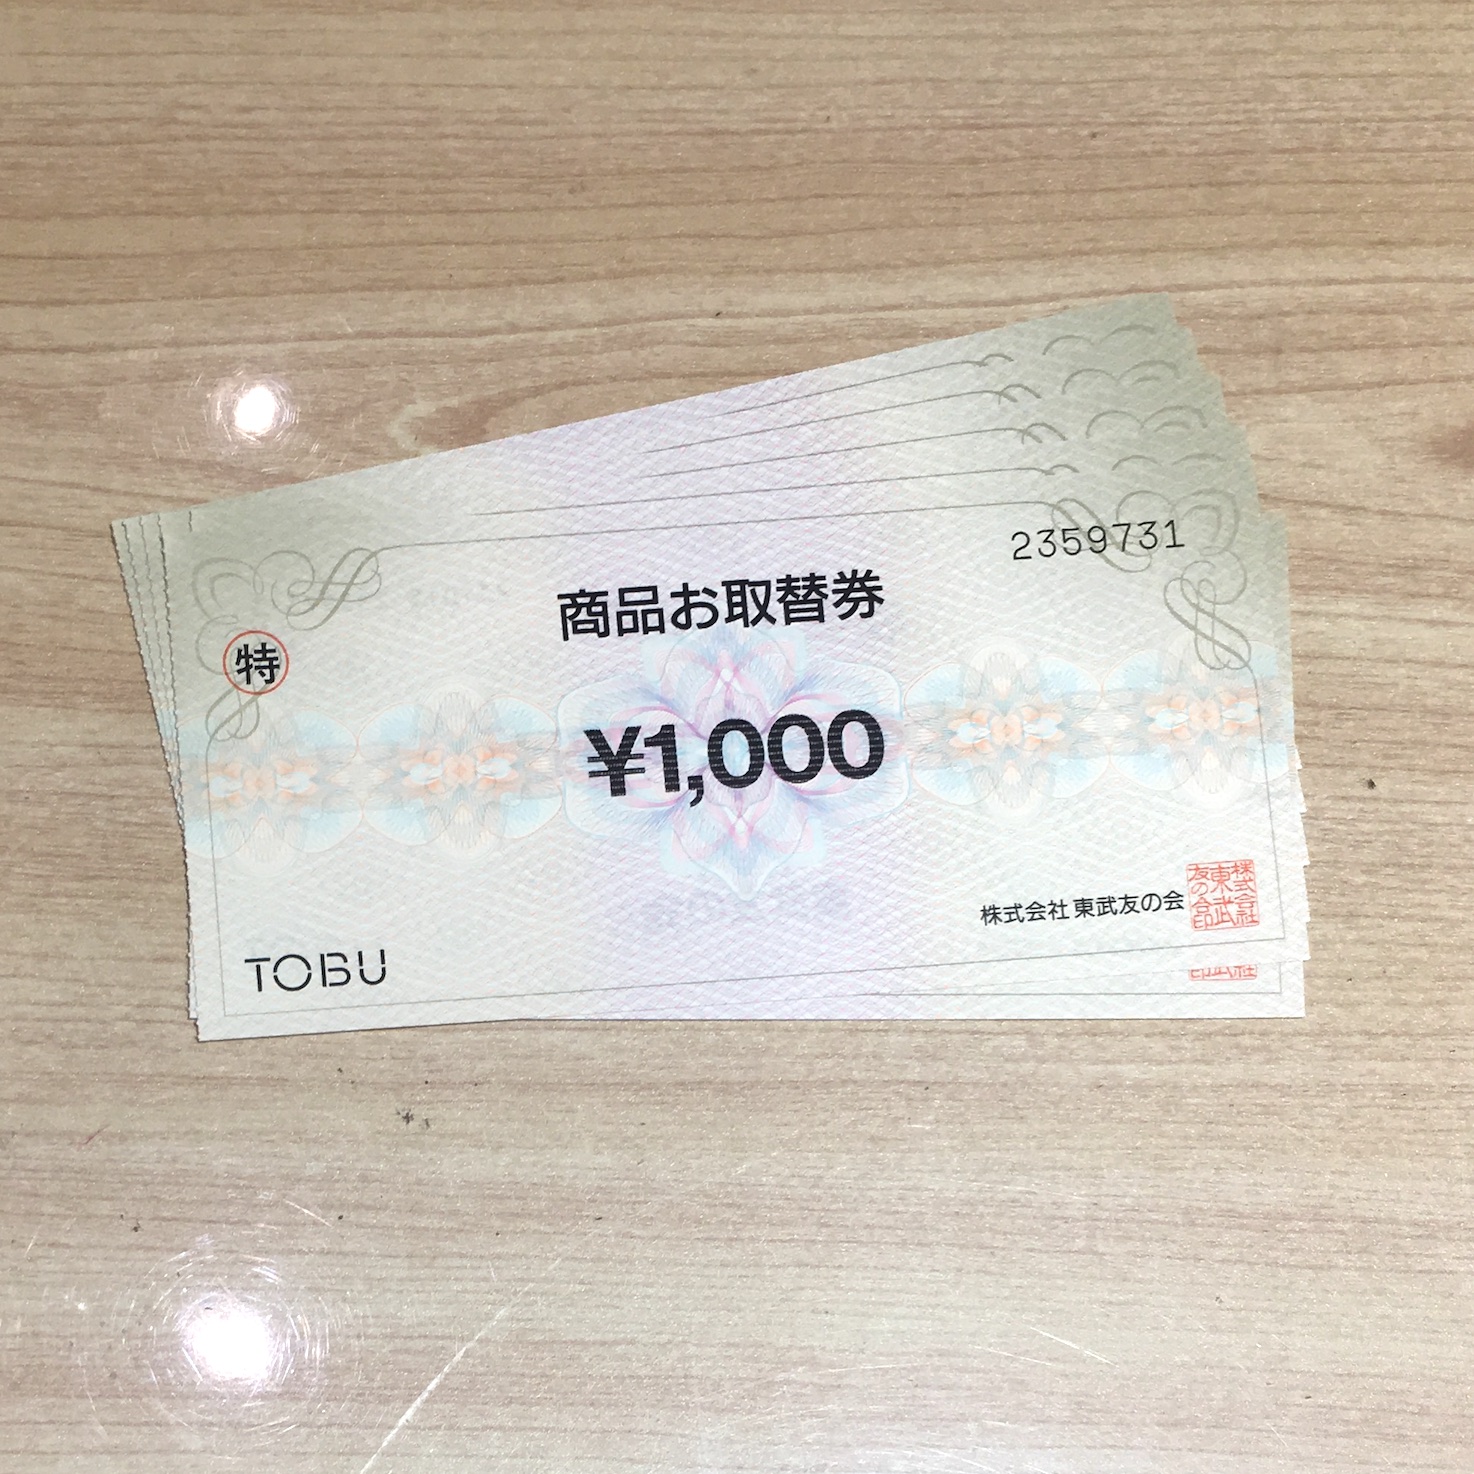 【買取実績】東武友の会 商品お取替券をお買取いたしました。 | 高価買取なら買取屋 東京あきんど